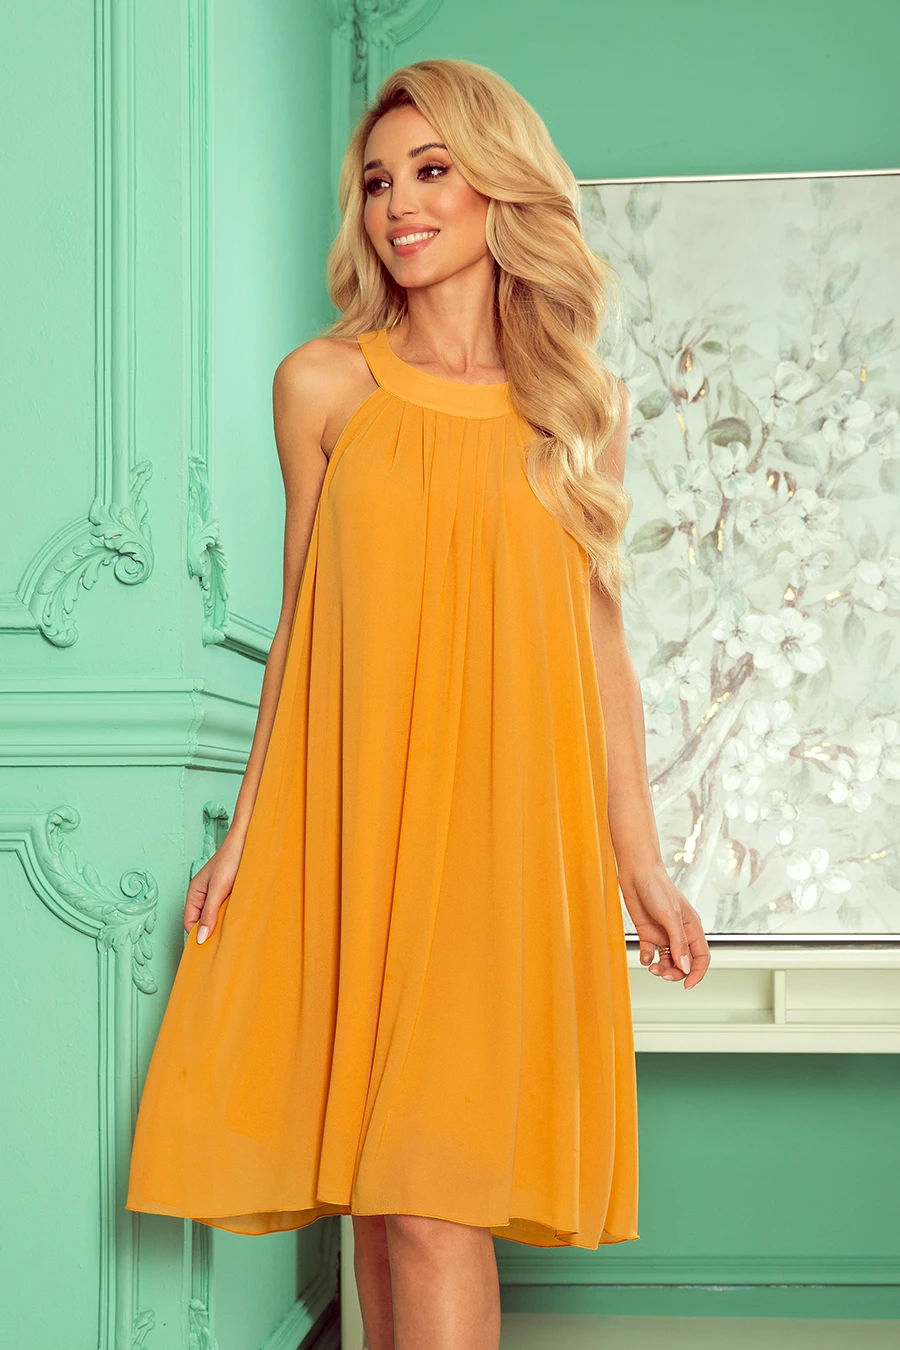 350-3 ALIZEE - szyfonowa sukienka z wiązaniem - kolor MIODOWY